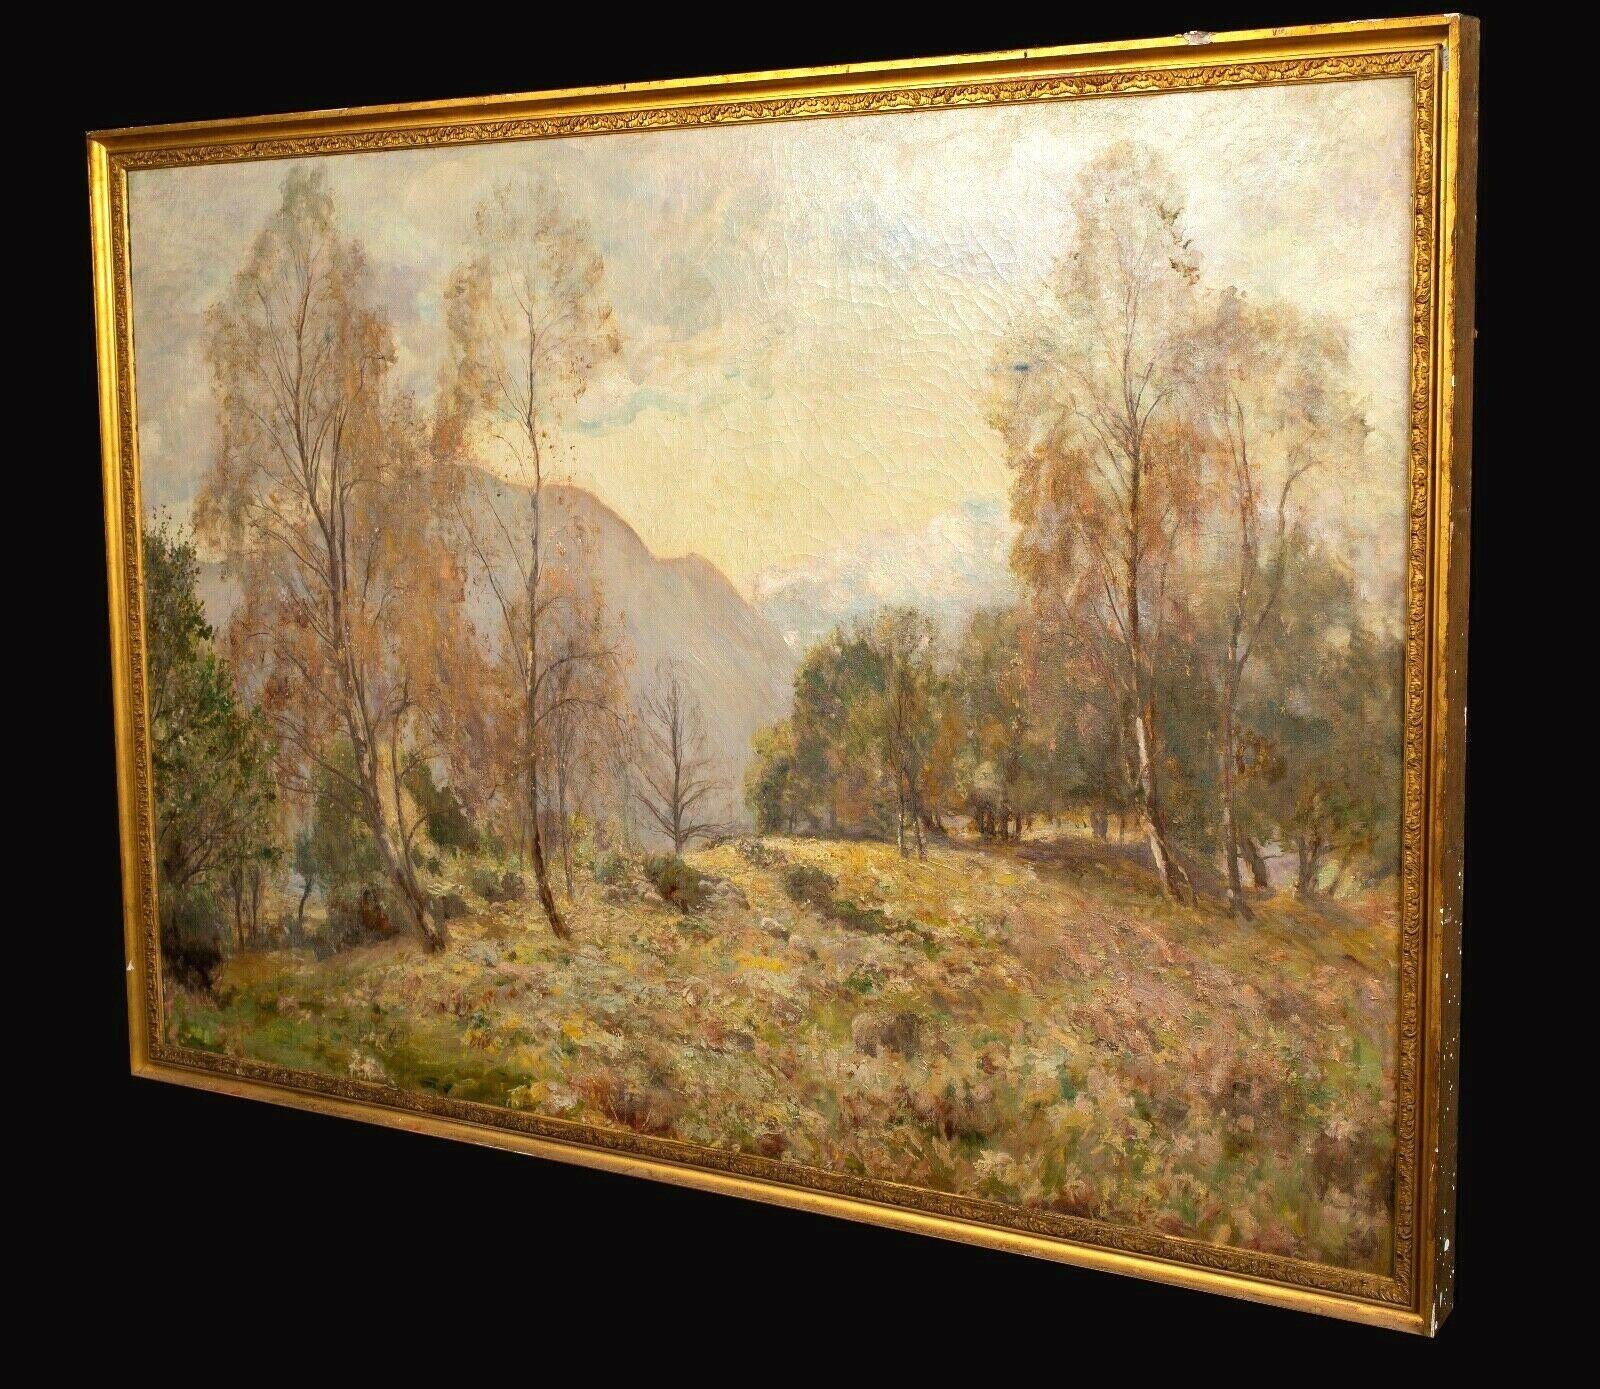 No. 4 The Birk And The Bracken, daté de 1913

par Sir David Murray (1849-1933) - ENORME PAYSAGE

Beau et vaste paysage automnal du 19ème siècle intitulé 